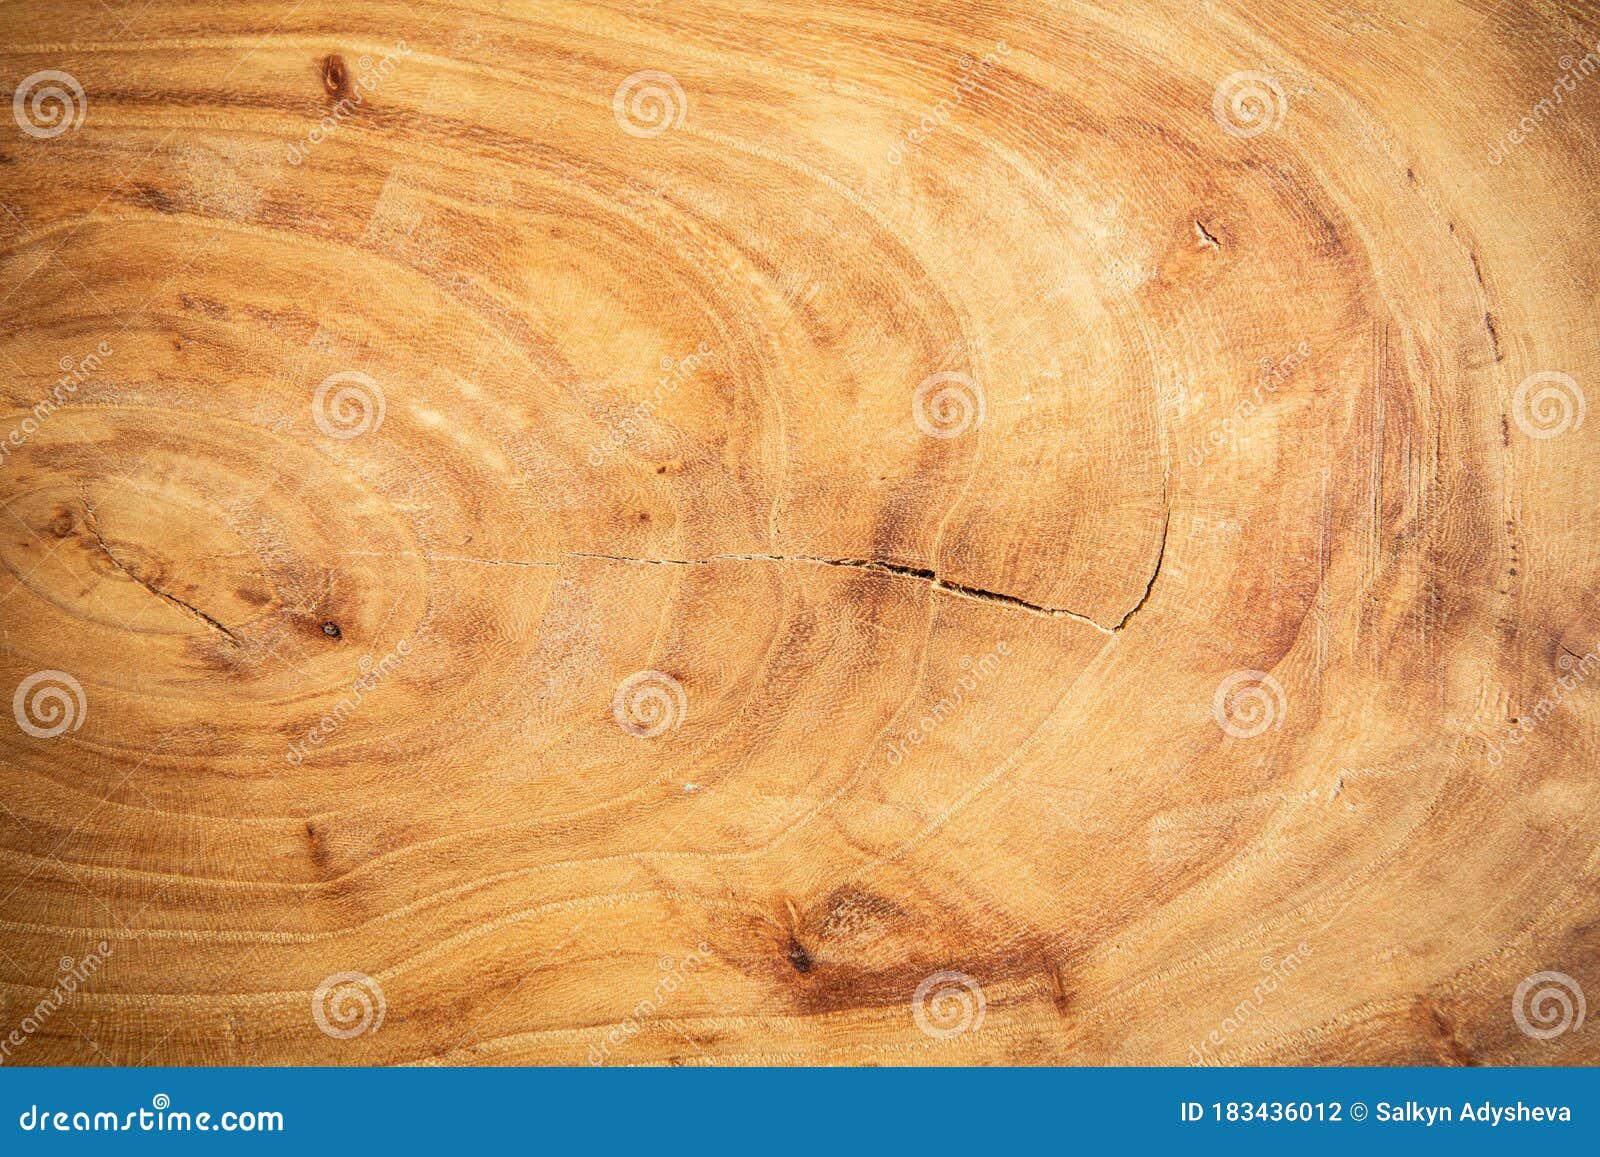 Ván gỗ tròn từ sồi: Ván gỗ tròn từ sồi là một sản phẩm độc đáo và tự nhiên, mang đến sự đẳng cấp và sang trọng cho không gian sống. Với độ bền cao, màu sắc và mùi thơm đặc trưng, chúng sẽ làm cho không gian sống của bạn trở nên ấn tượng và đẳng cấp hơn. Hãy chiêm ngưỡng những tấm ván gỗ tròn từ sồi và cảm nhận sự đẹp mà chúng đem lại.